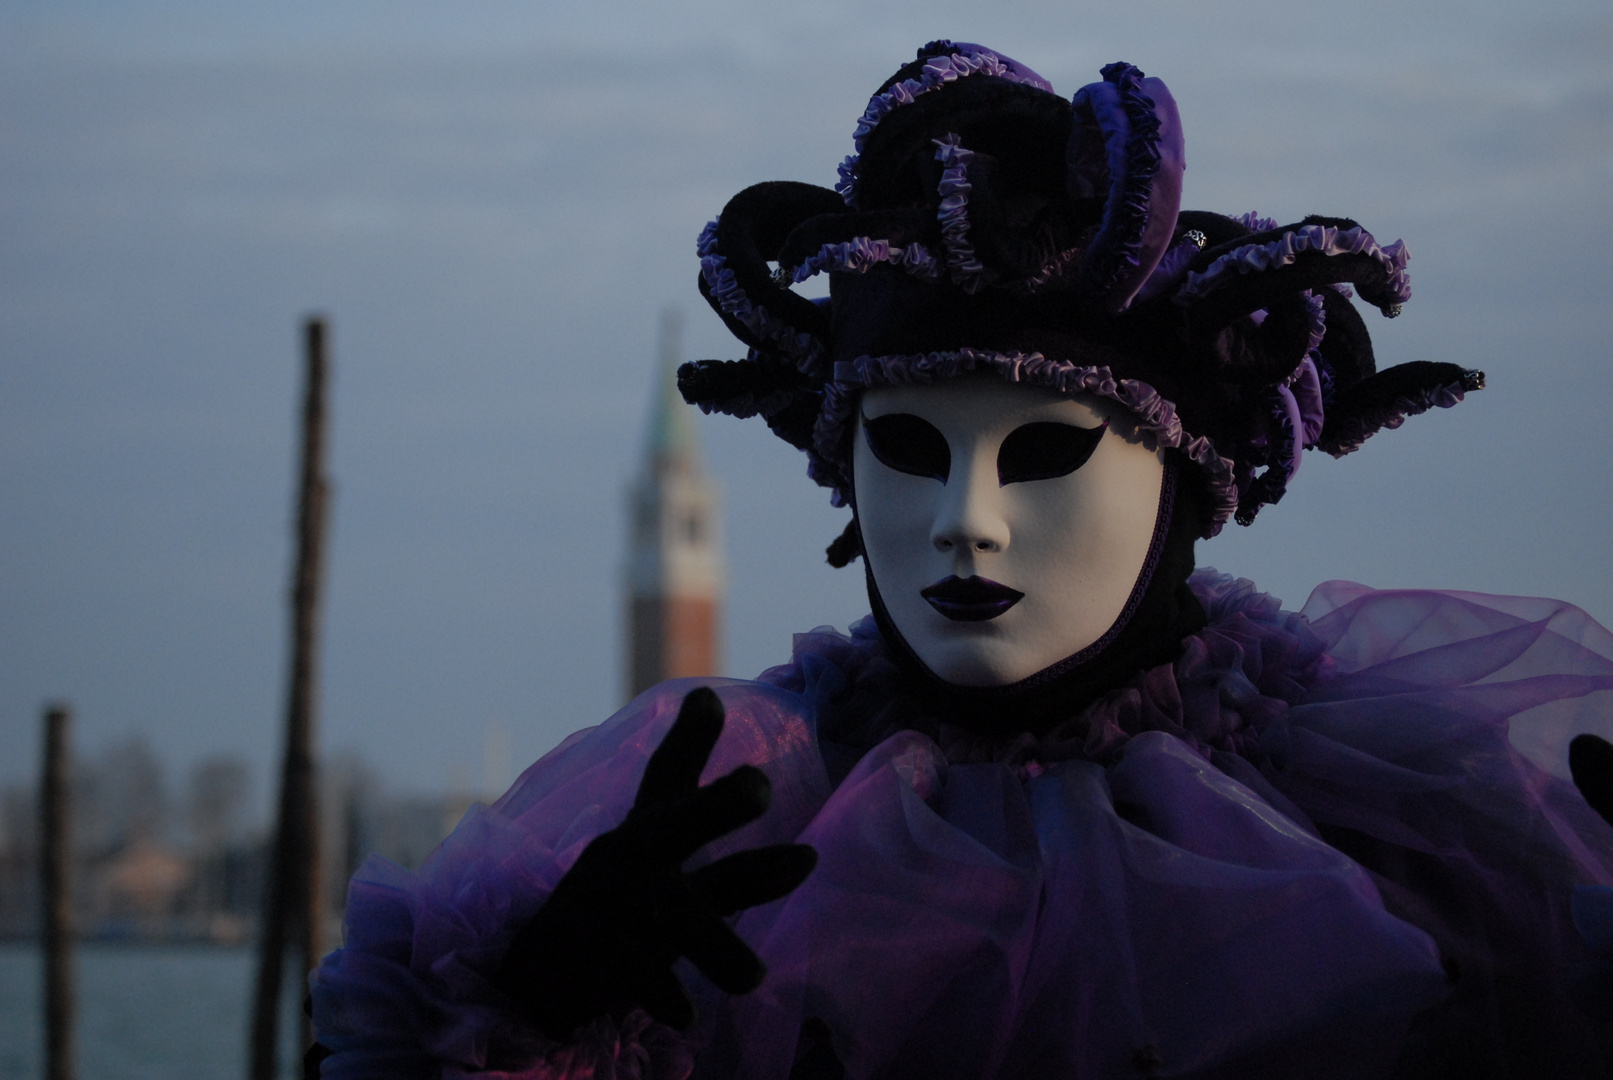 Carnevale die Venezia 2011 Maschera davanti a Campanile